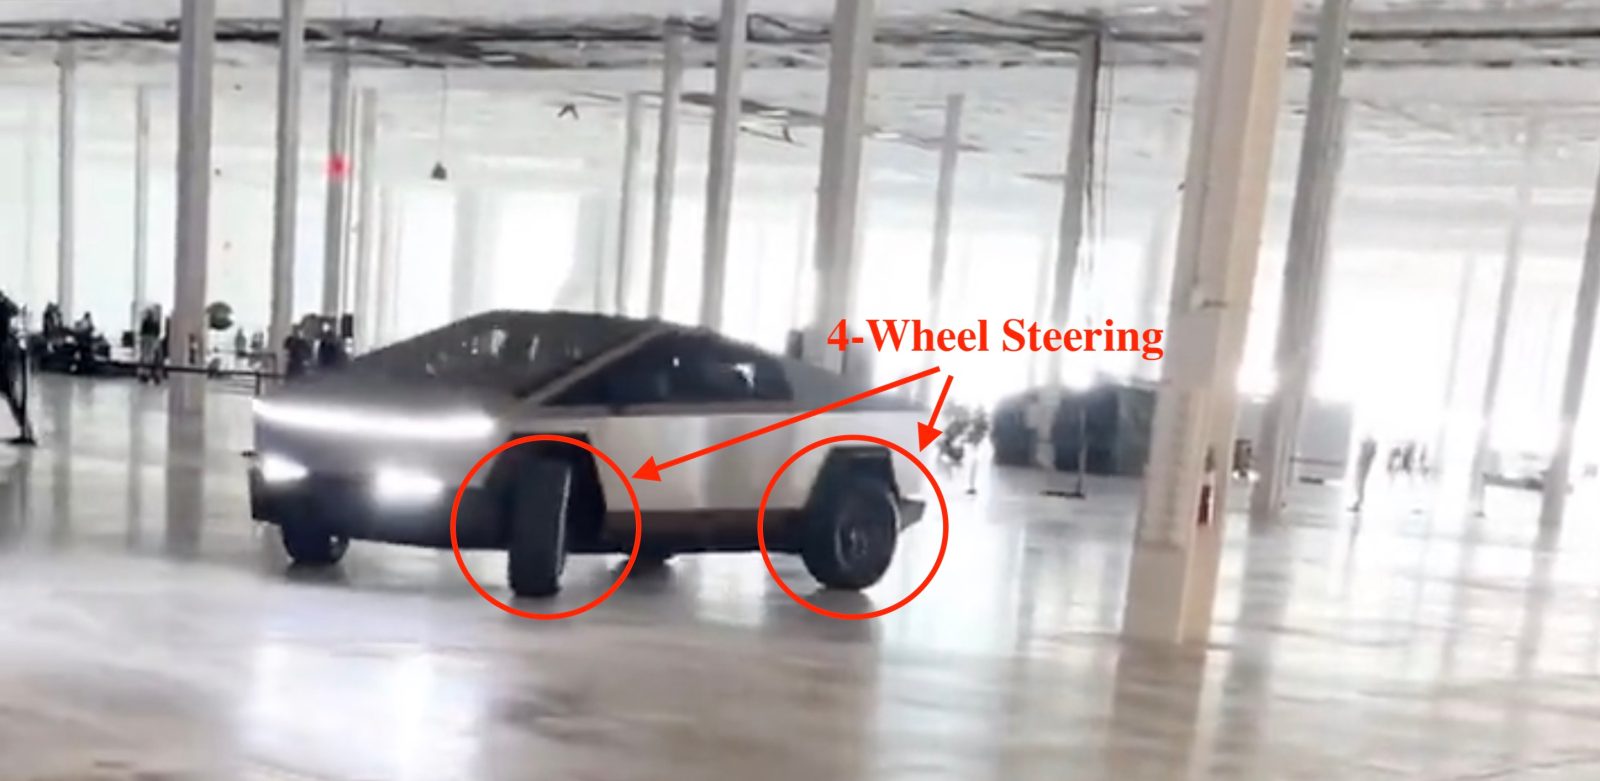 Tesla Cybertruck 4-wheel steering